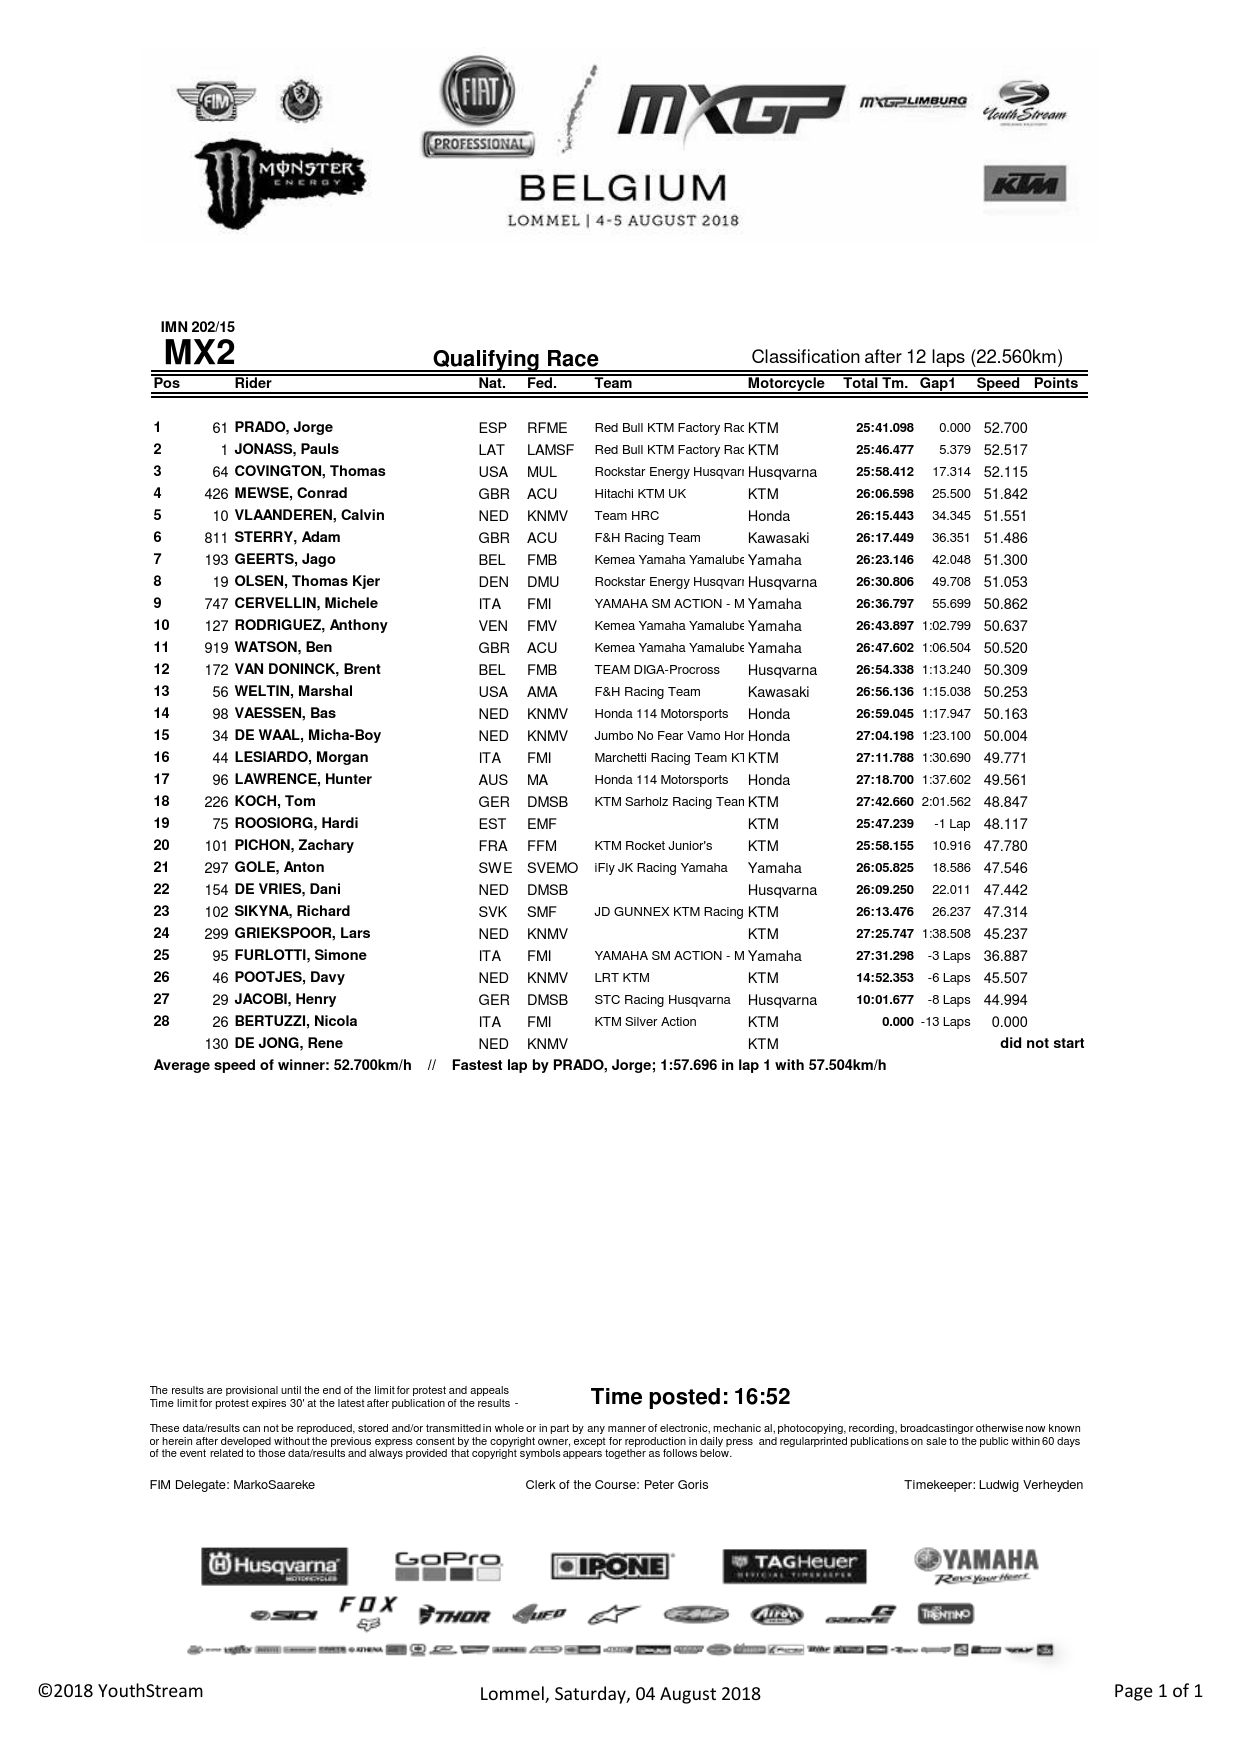 Результаты квалификации MX2 Гран-При Бельгии, Ломмель